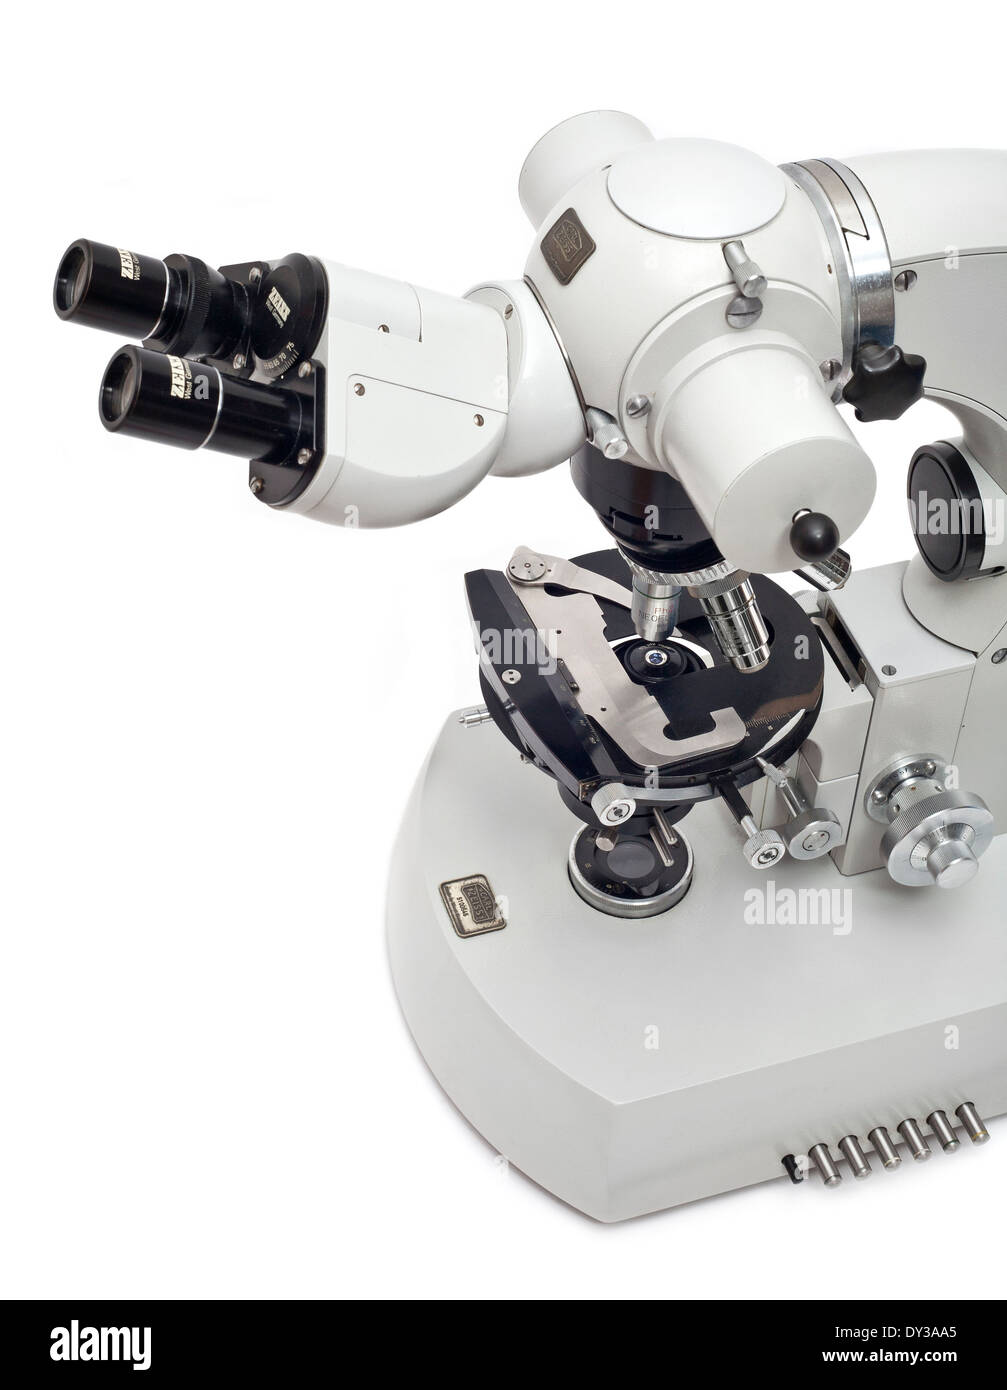 Zeiss Universal microscopio composto, ampiamente utilizzati negli anni ottanta in molti laboratori professionali di tutto il mondo. Foto Stock